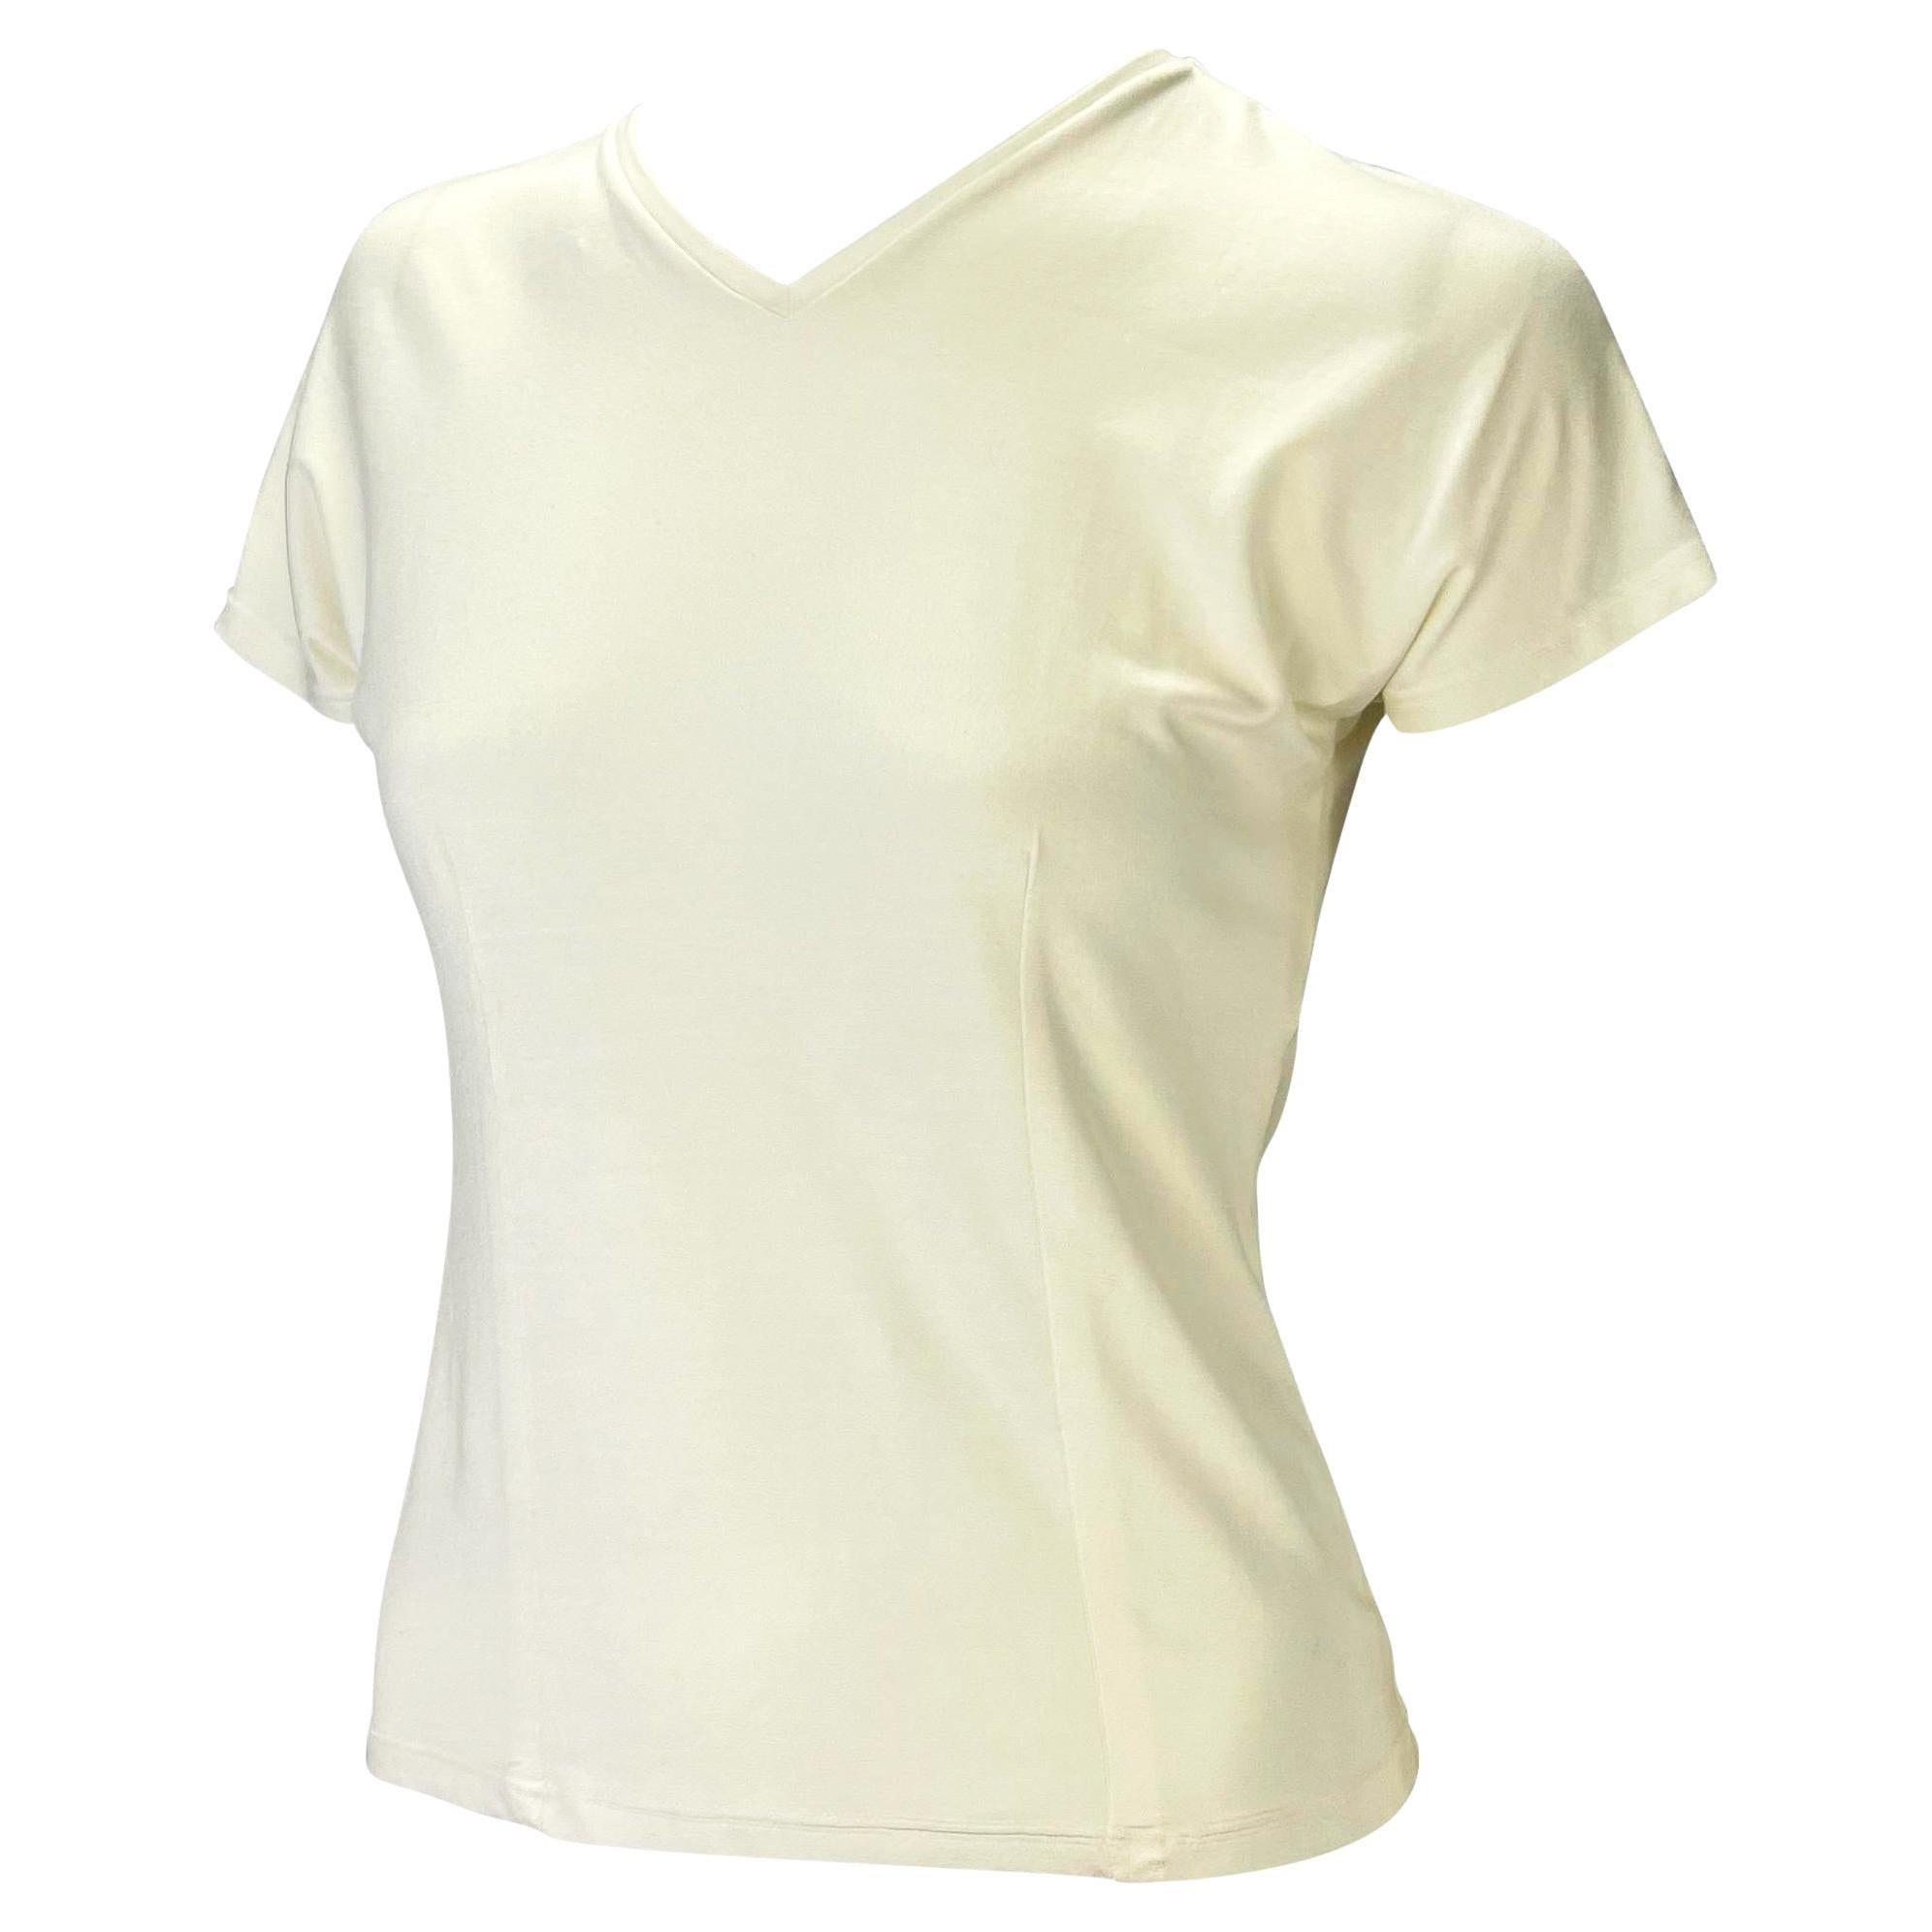 Ein T-Shirt mit minimalem V-Ausschnitt, entworfen von Tom Ford für die Frühjahr/Sommer-Kollektion 1997 von Gucci. Der taillierte Schnitt sorgt für eine körpernahe Silhouette und die Mischung aus Viskose und Elasthan sorgt dafür, dass das Shirt